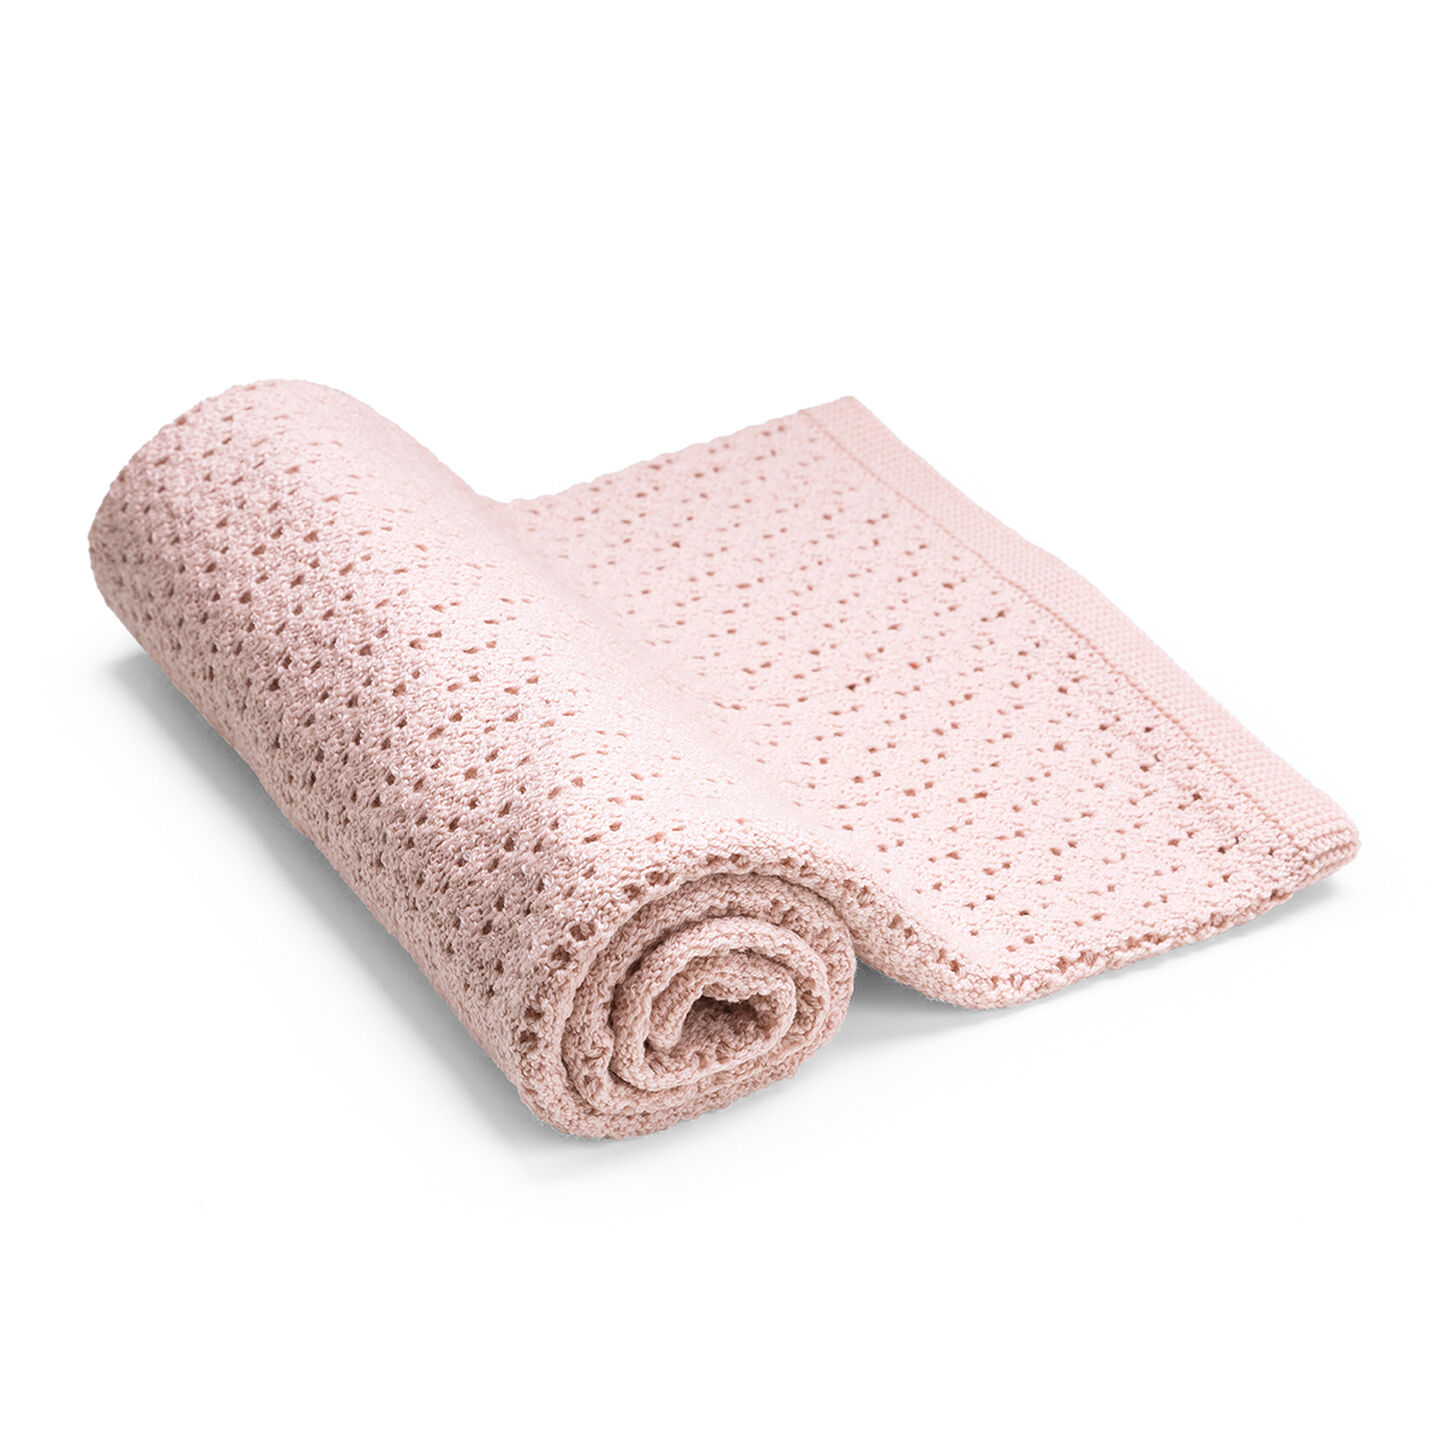 Stokke® Blanket Merino Wool Pink, Rose, mainview view 1